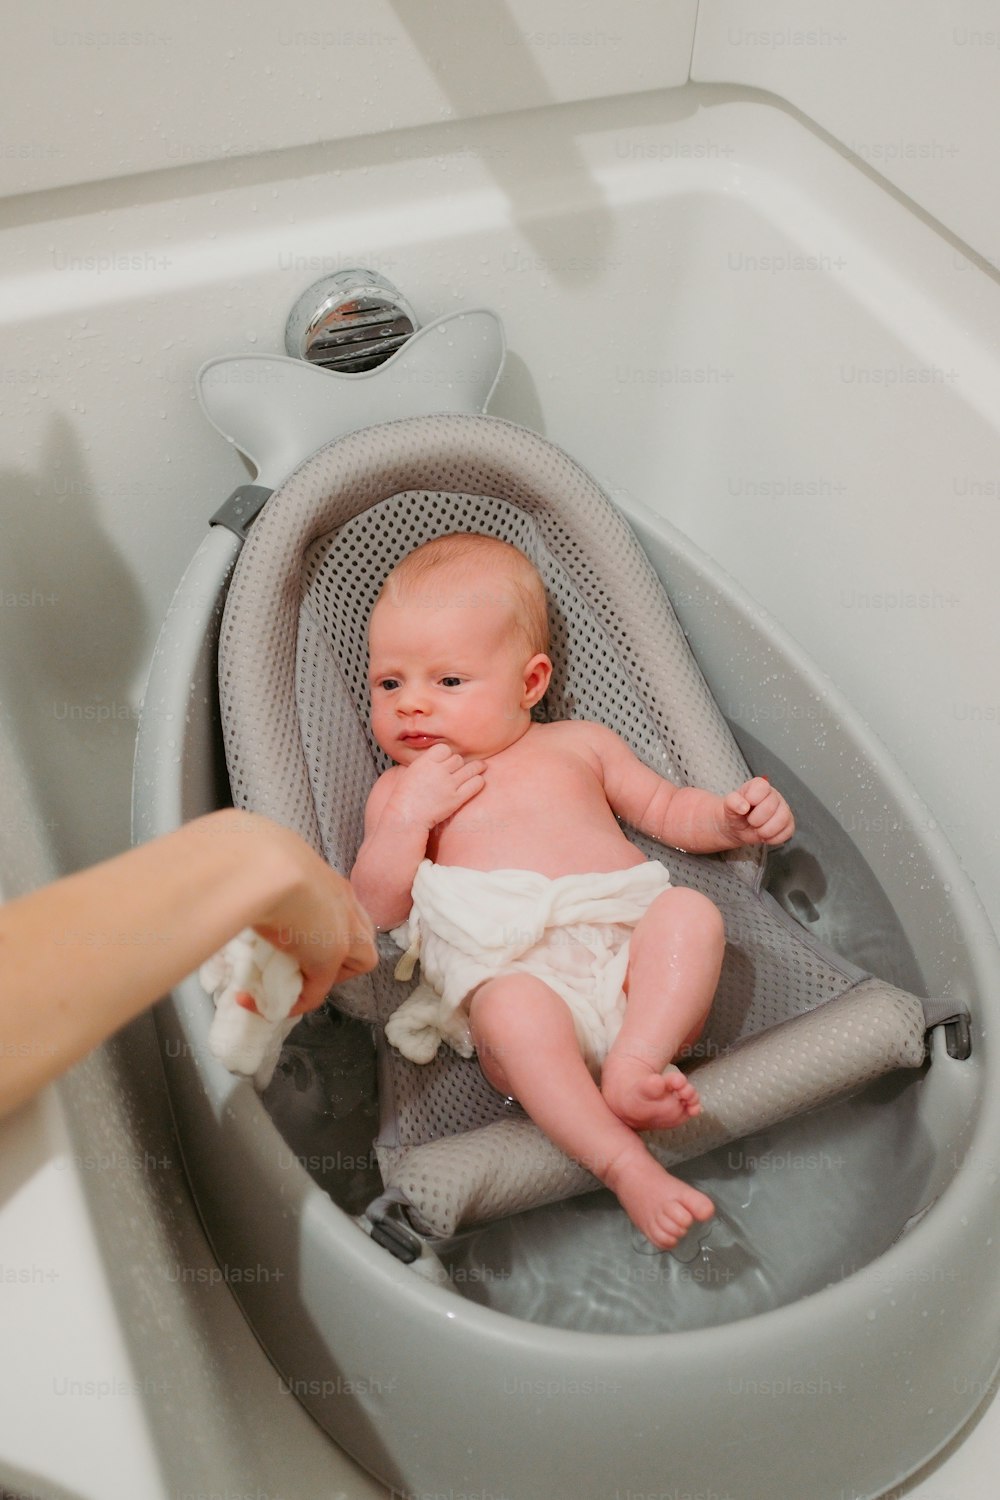 un bebé en una bañera sostenido por una persona